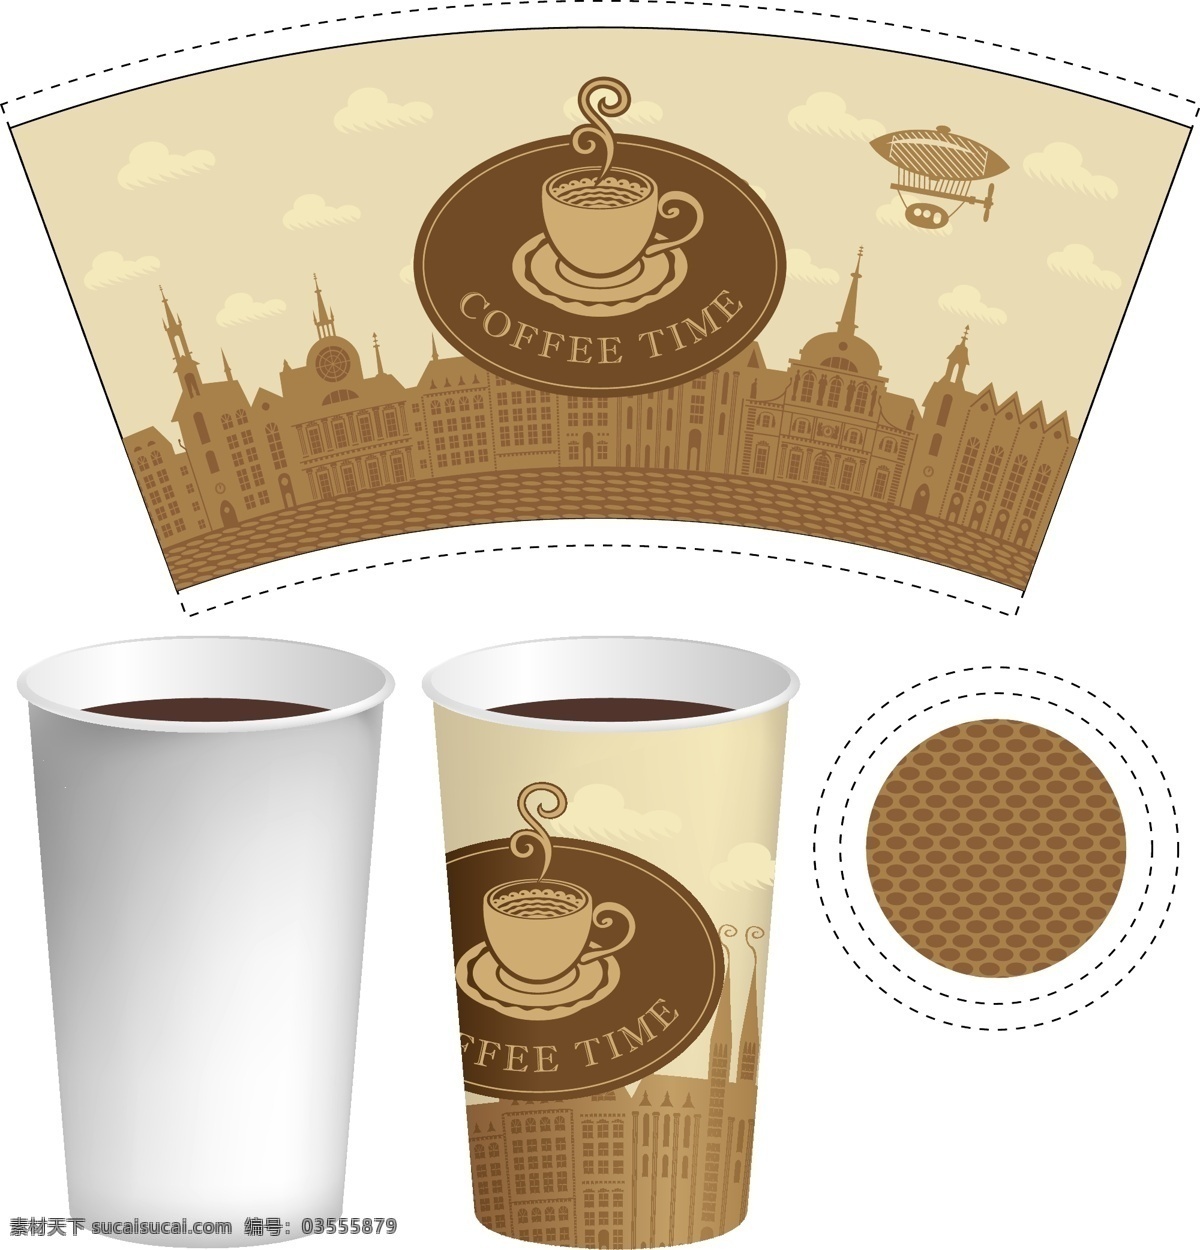 咖啡 杯子 包装 矢量素材 矢量图 设计素材 创意设计 包装设计 咖啡杯 矢量 高清图片